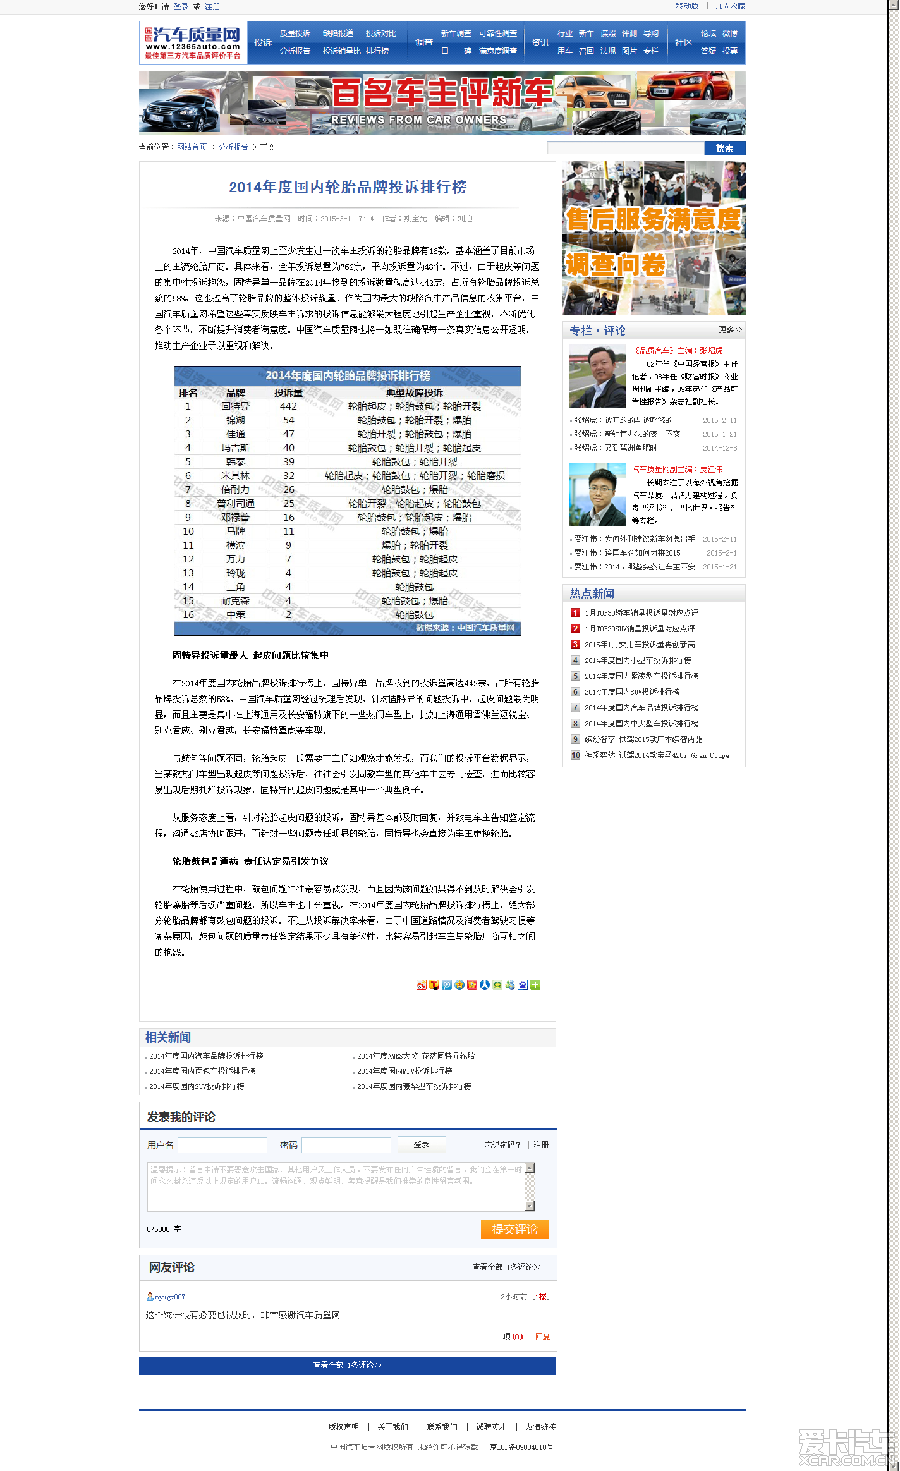 2014年度国内轮胎品牌投诉排行榜_北京汽车论